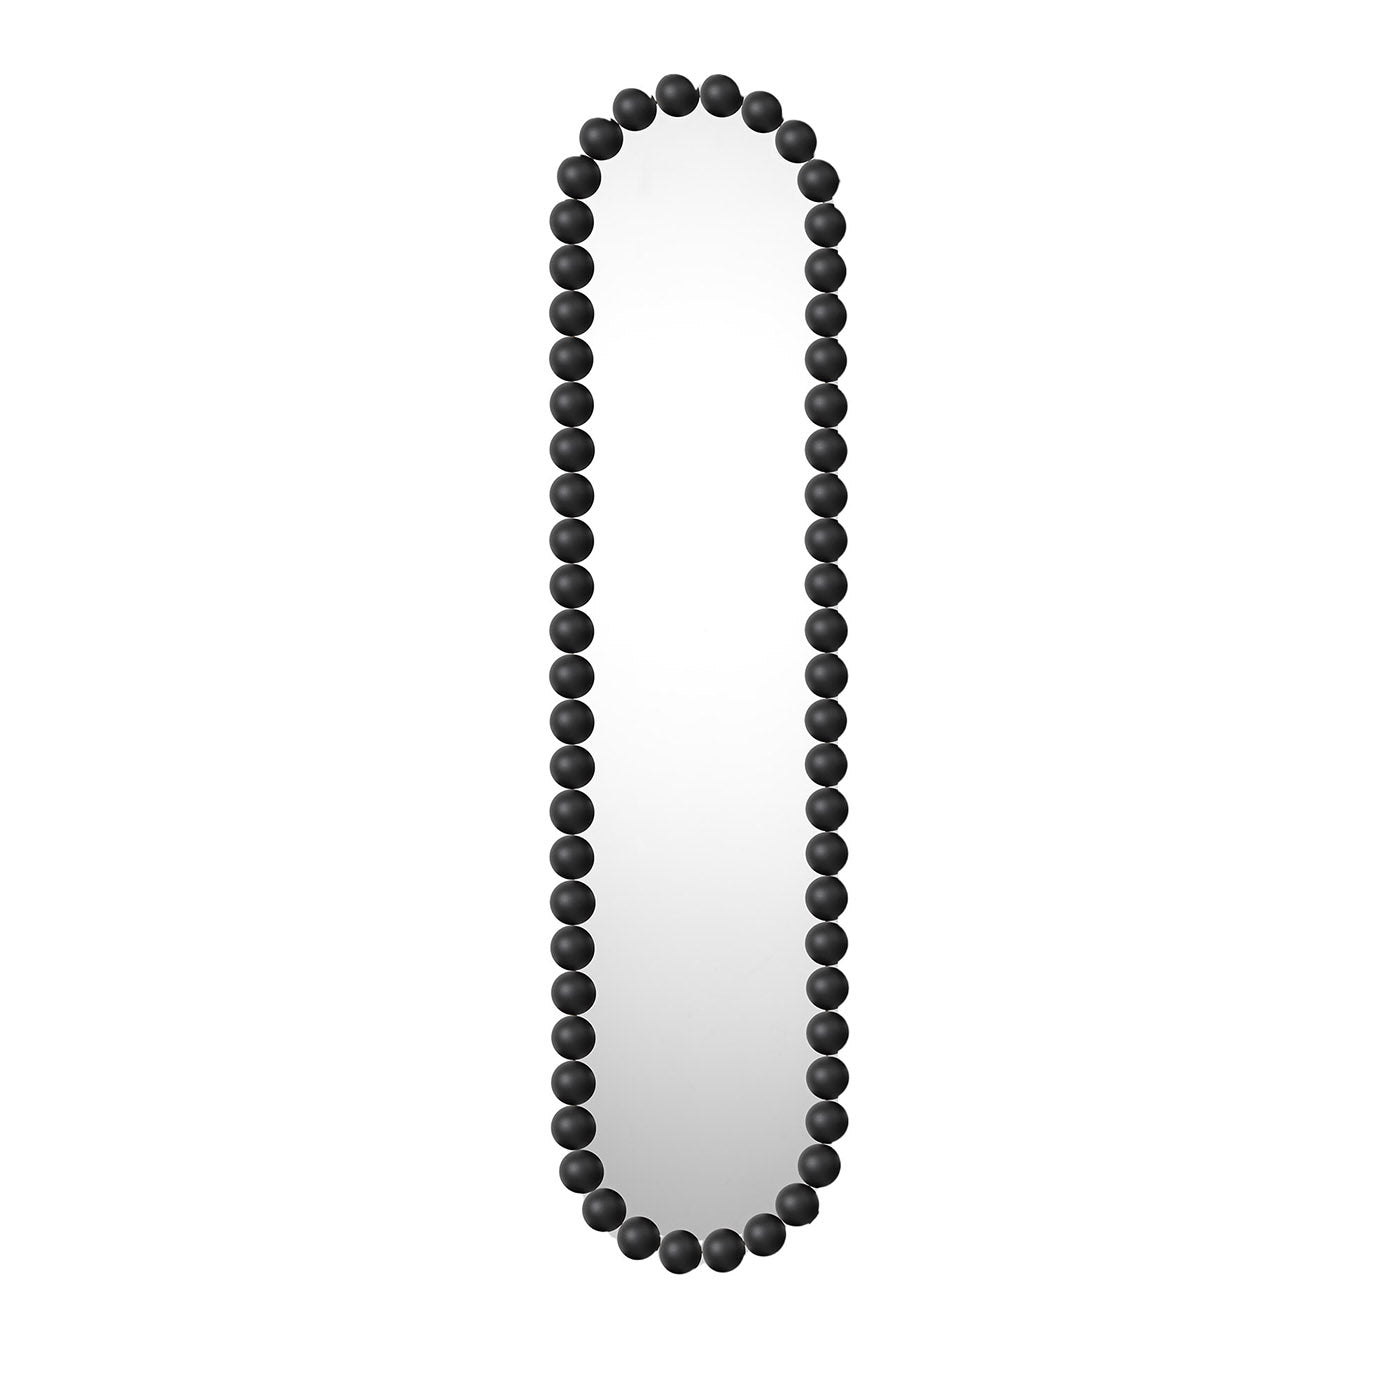 Specchio nero ovale Gioiello di Nika Zupanc - Vista principale